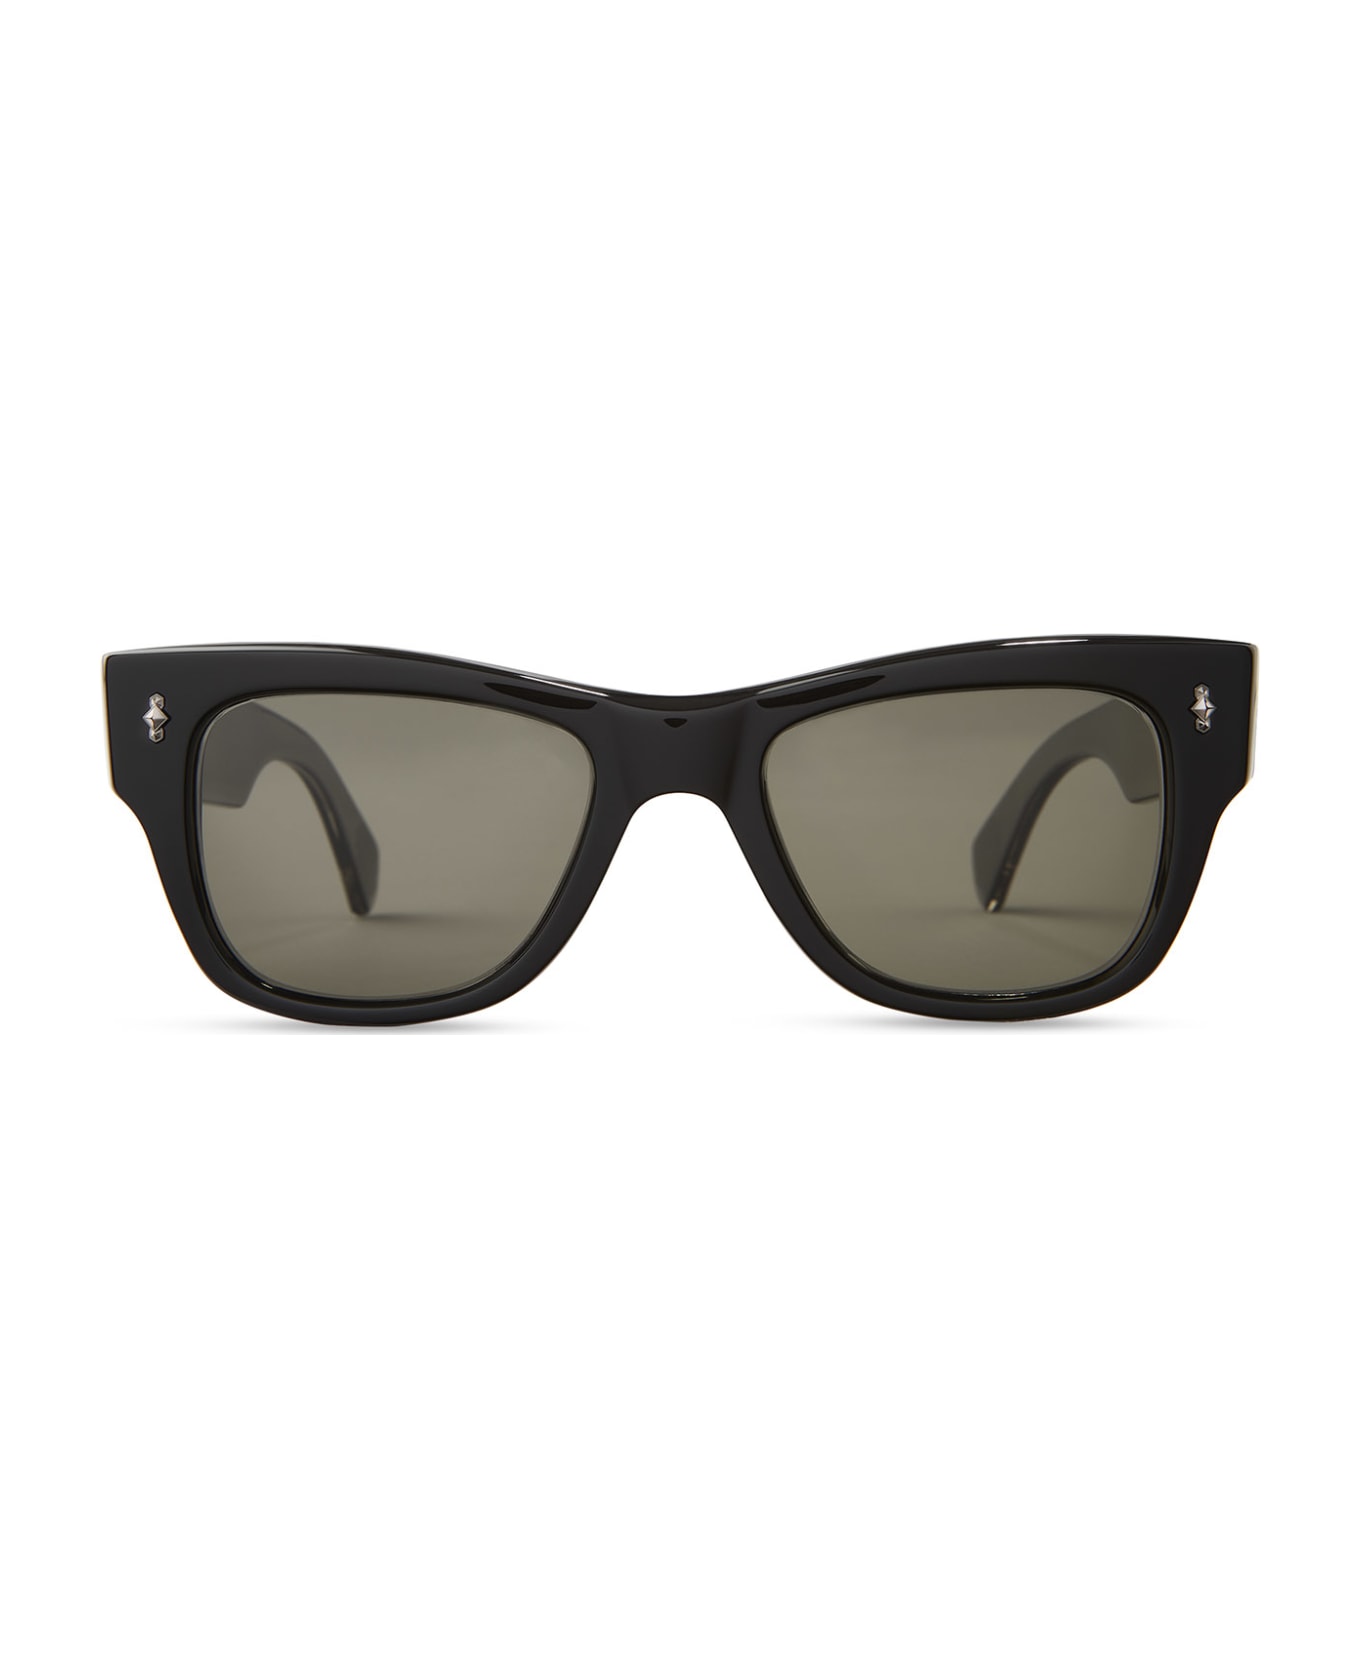 Mr. Leight Duke S Black-gunmetal Sunglasses -  Black-Gunmetal サングラス